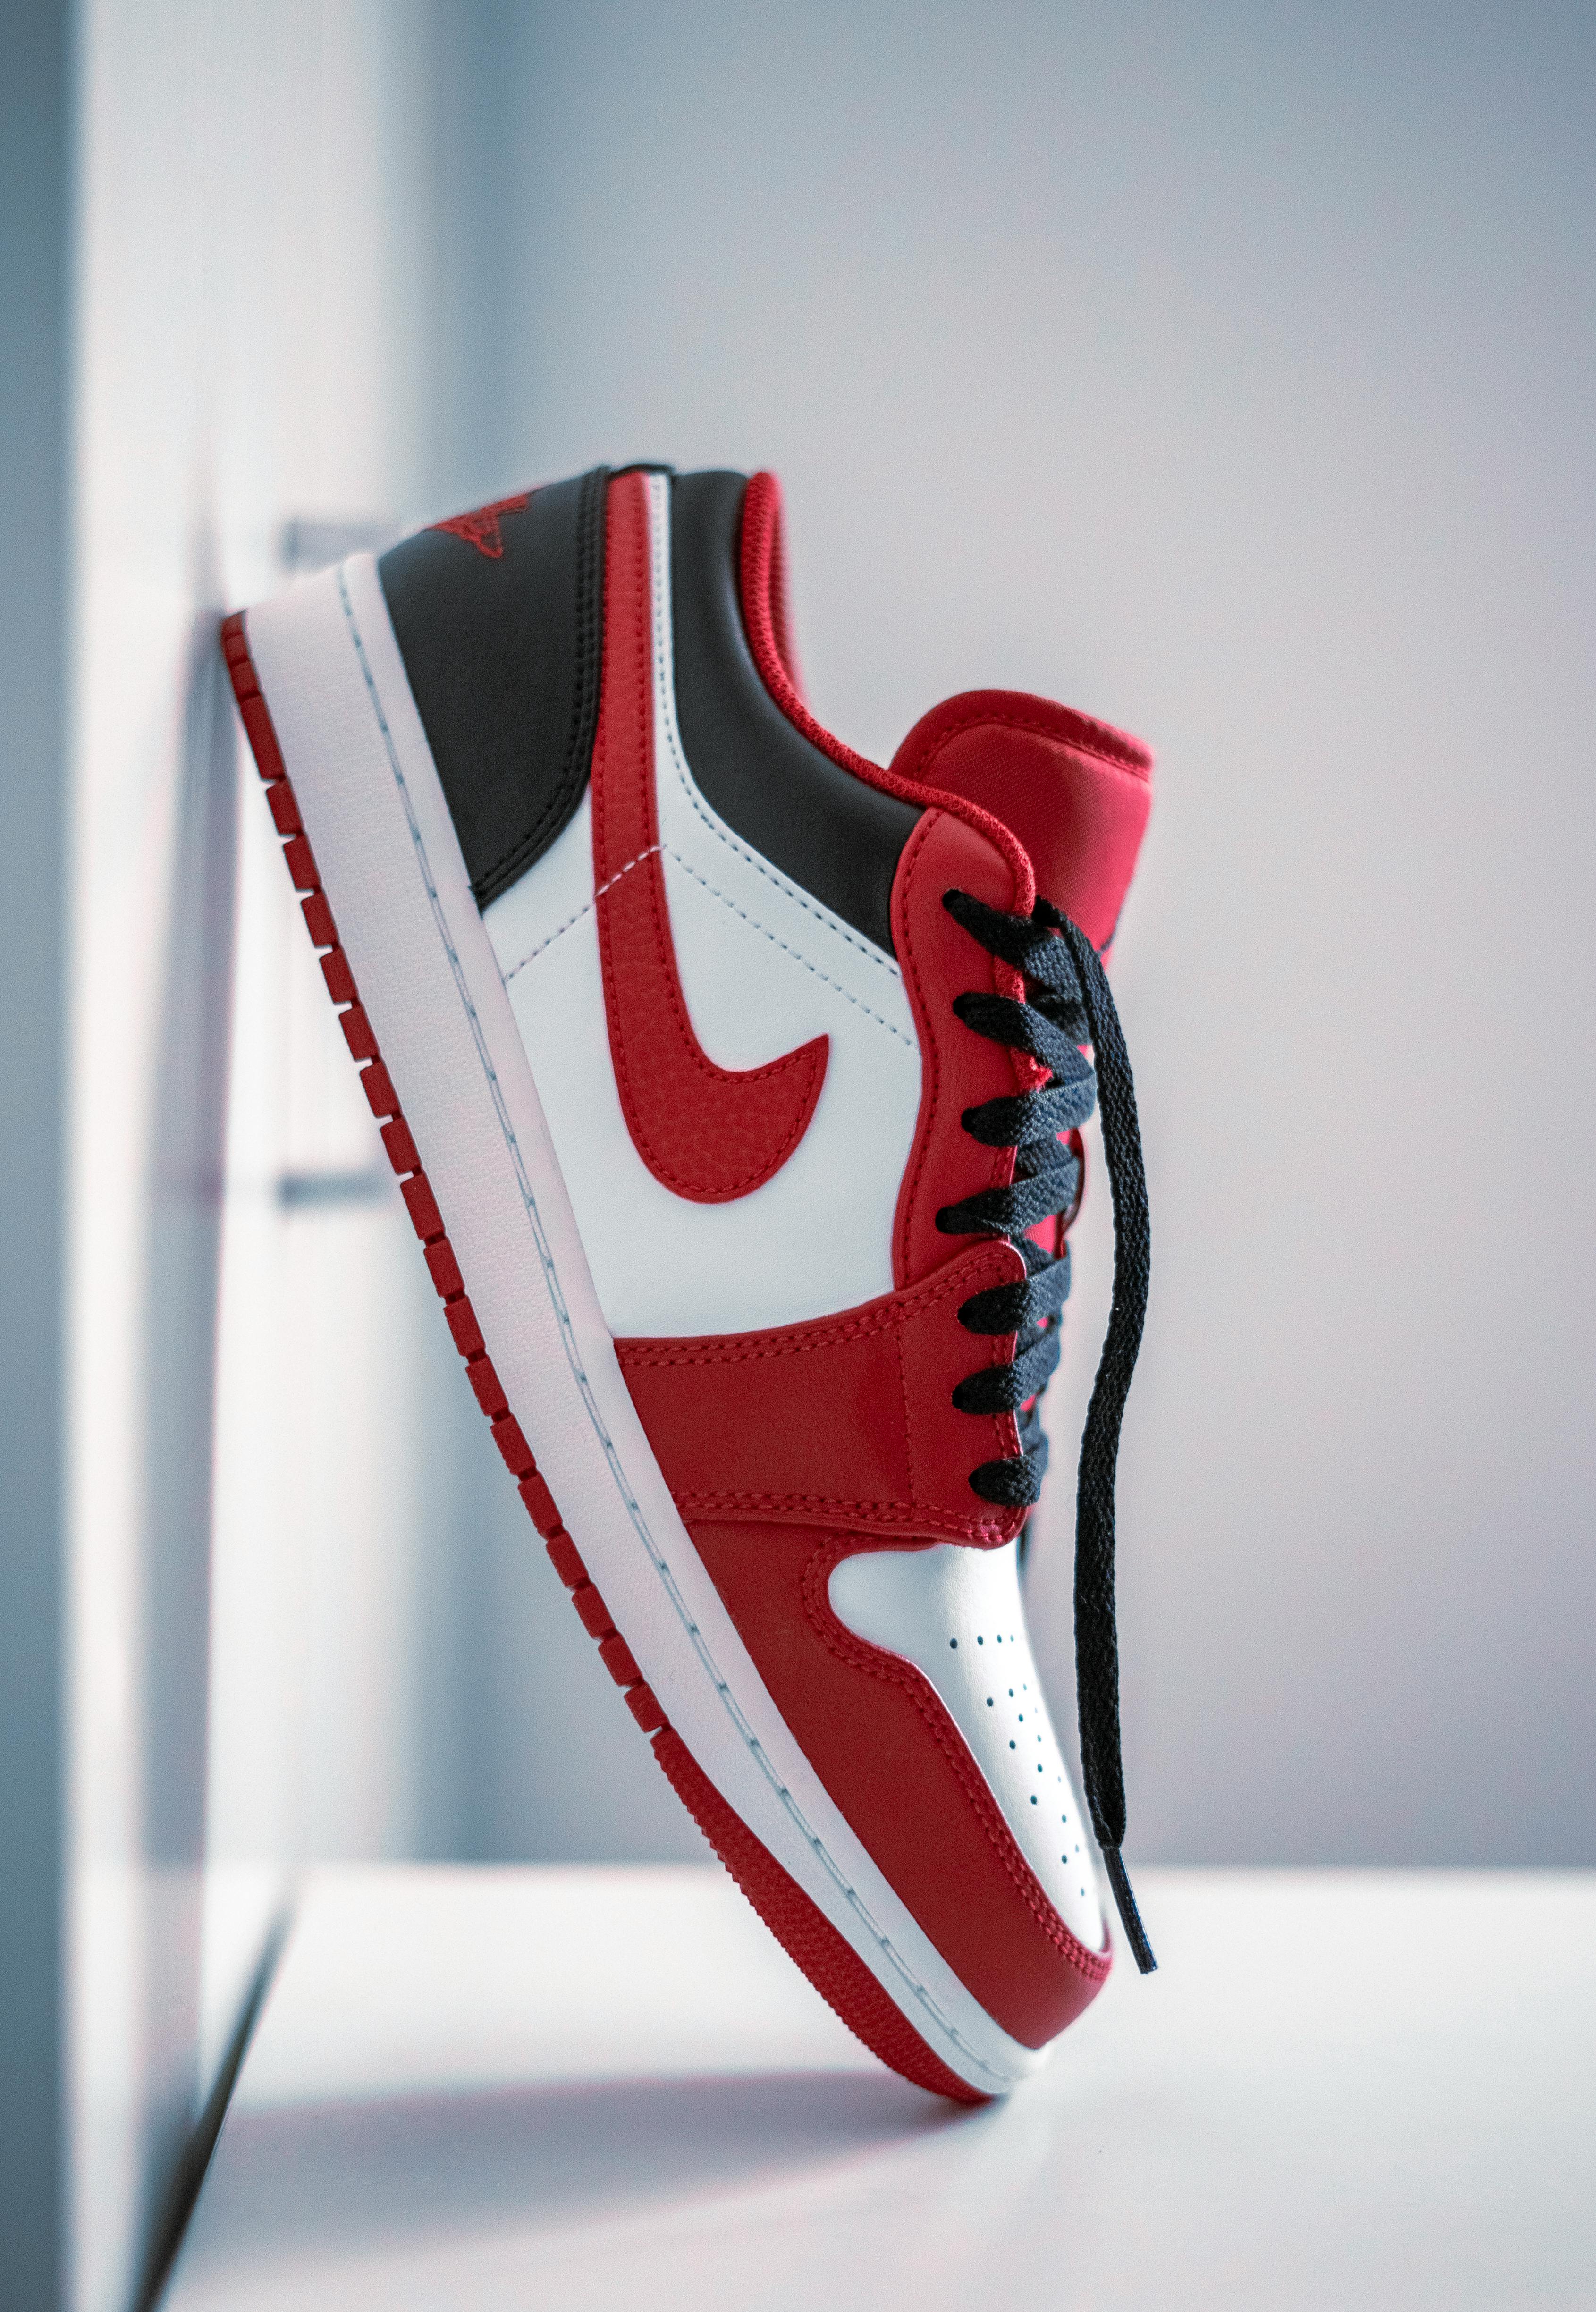 Jordan Nikecom